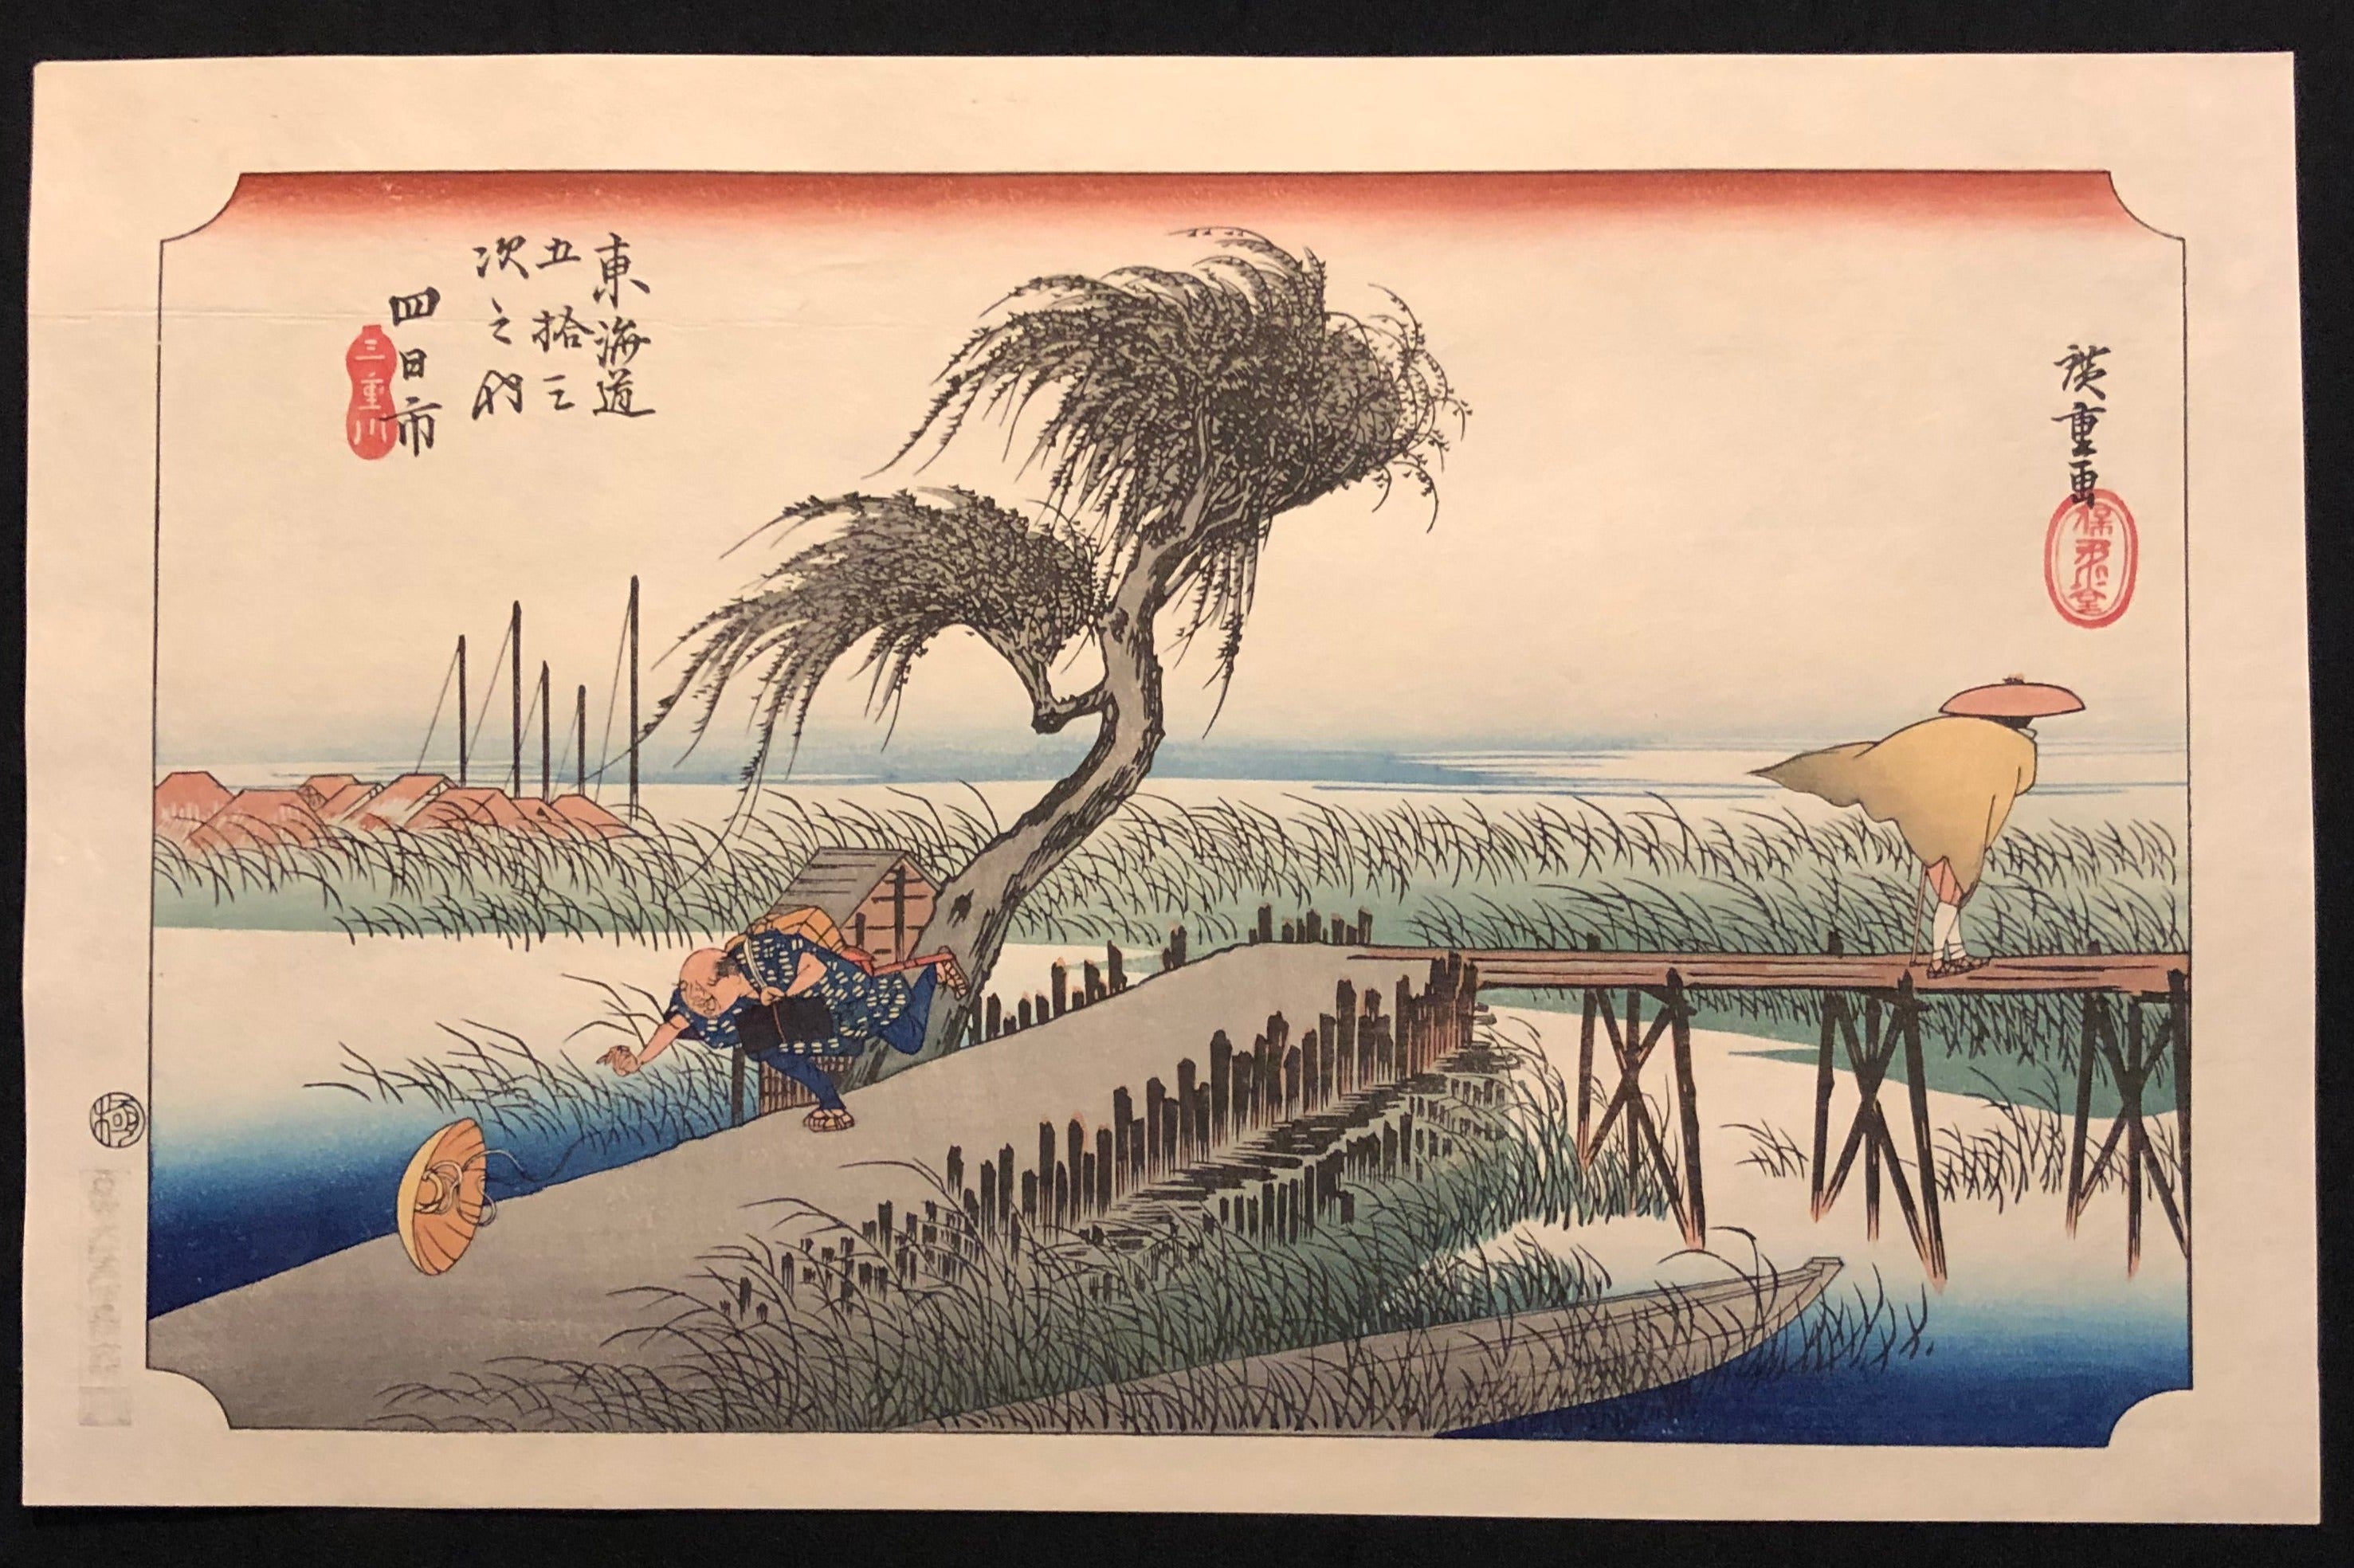 歌川広重 東海道五十三次 復刻版 四日市 木版画 浮世絵 Utagawa 